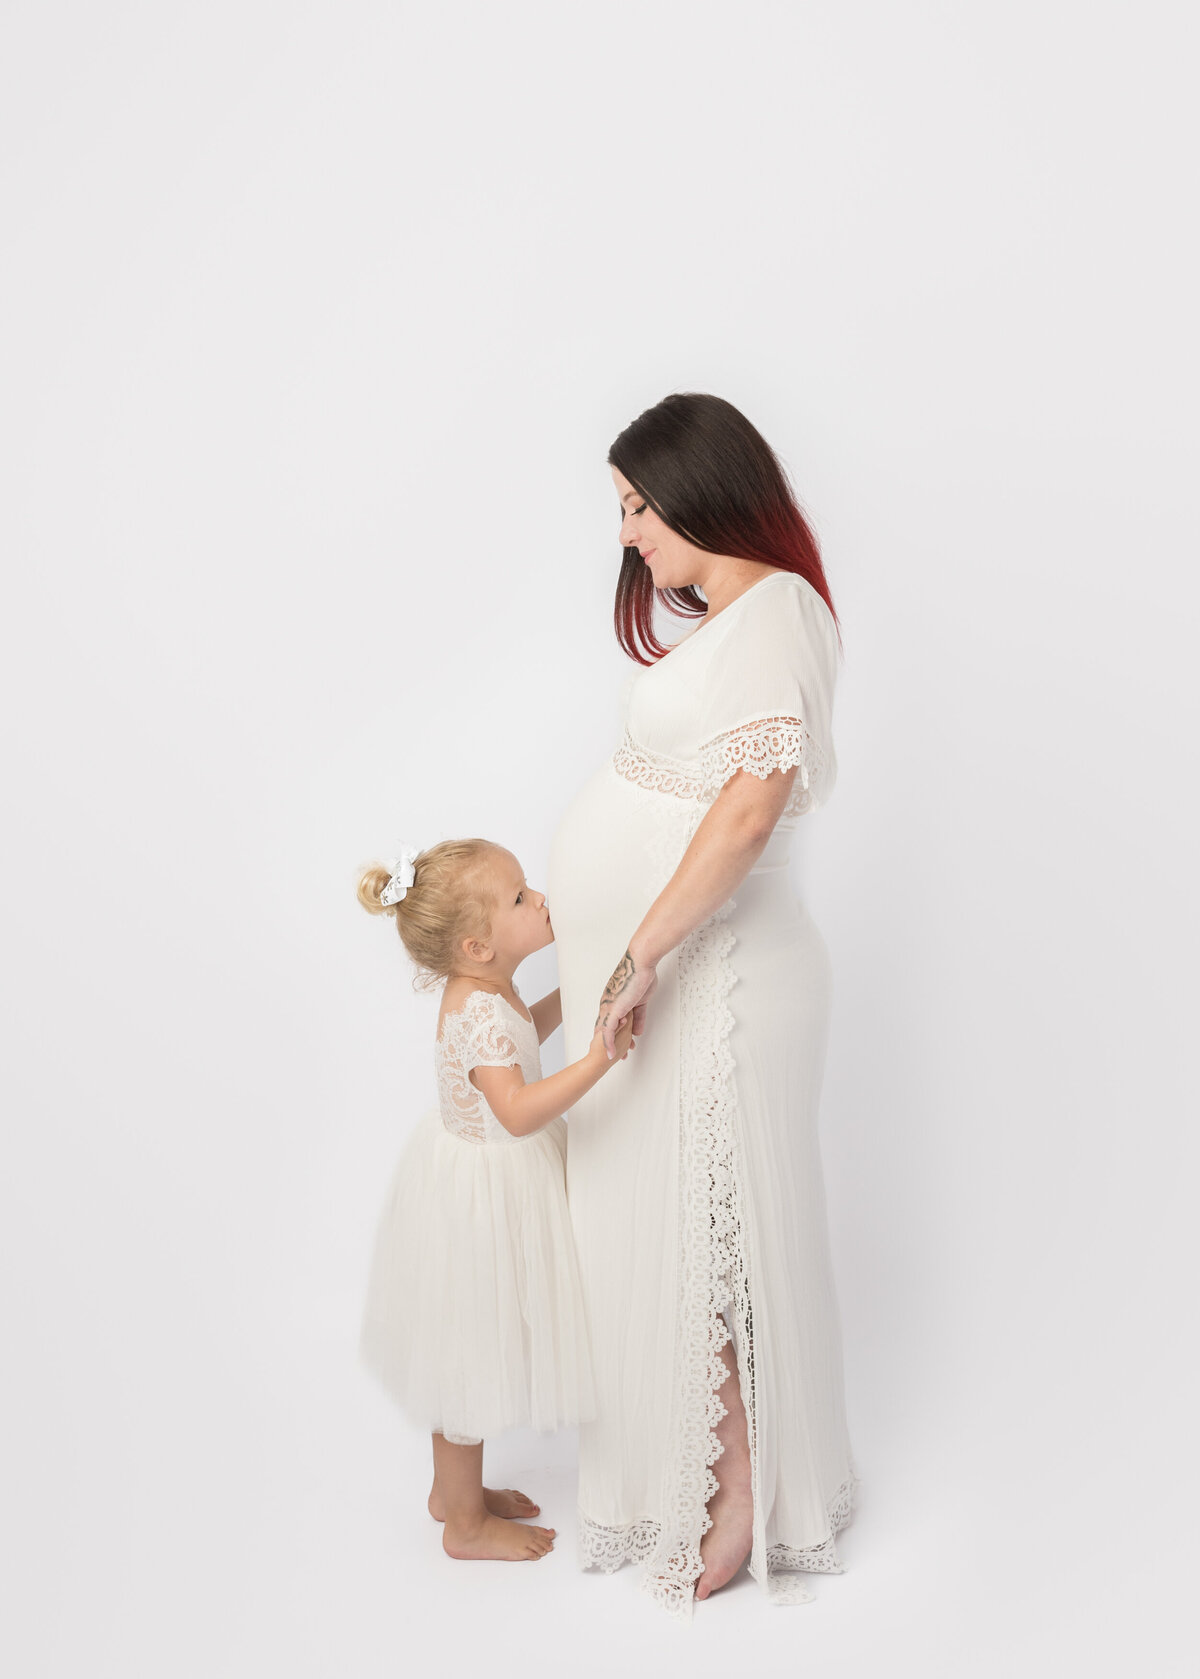 Hobart-Maternity-Baby-Photographer-Lauren-Vanier-Photography-72